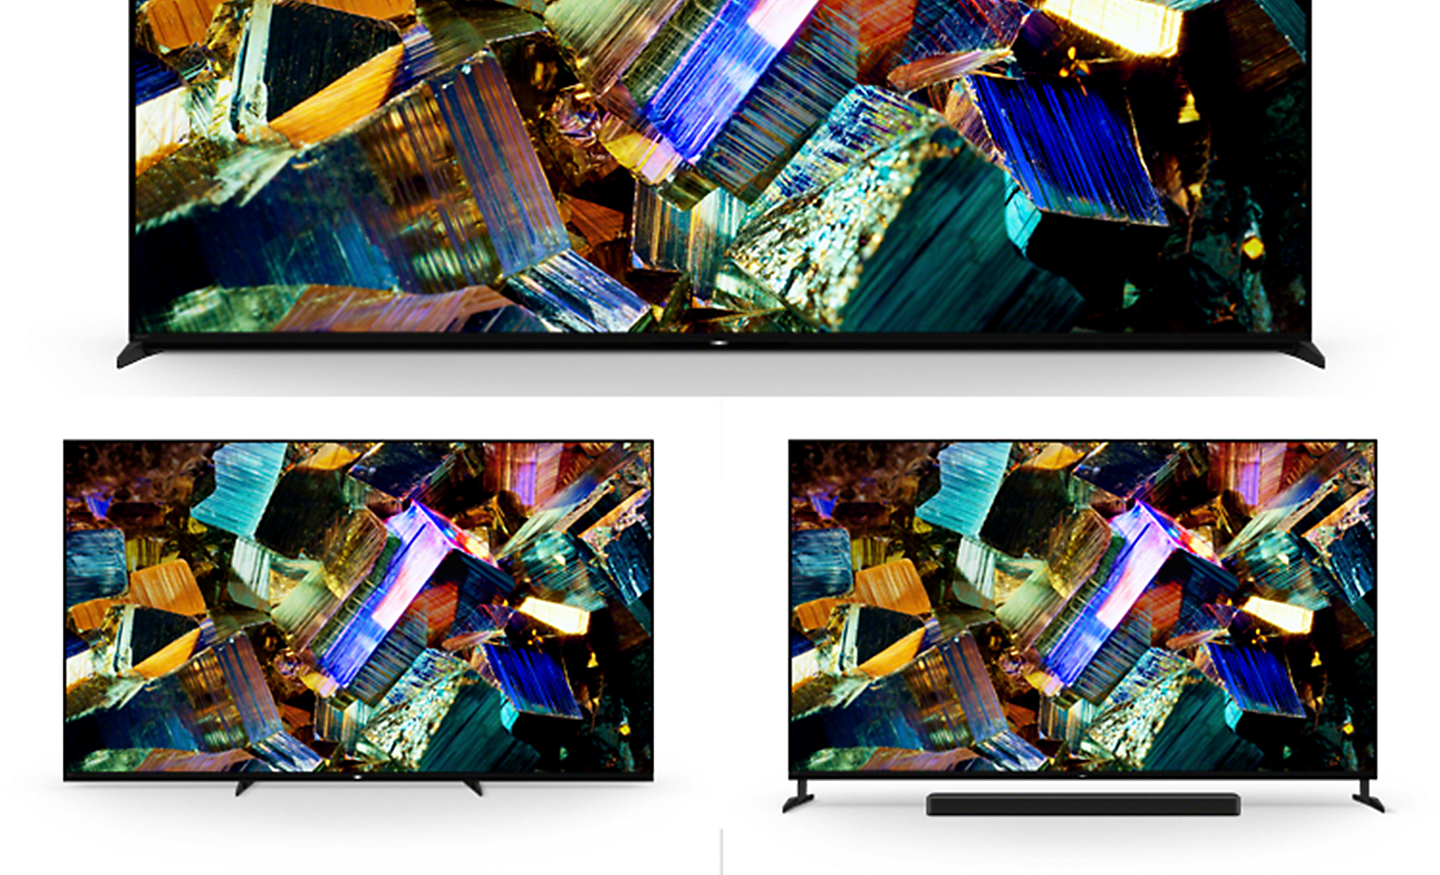 Image de trois téléviseurs BRAVIA série Z9K avec pieds visibles dans la position standard, la position centrale et la position haute pour placer une barre de son, et captures d'écran de boîtes en aluminium colorées